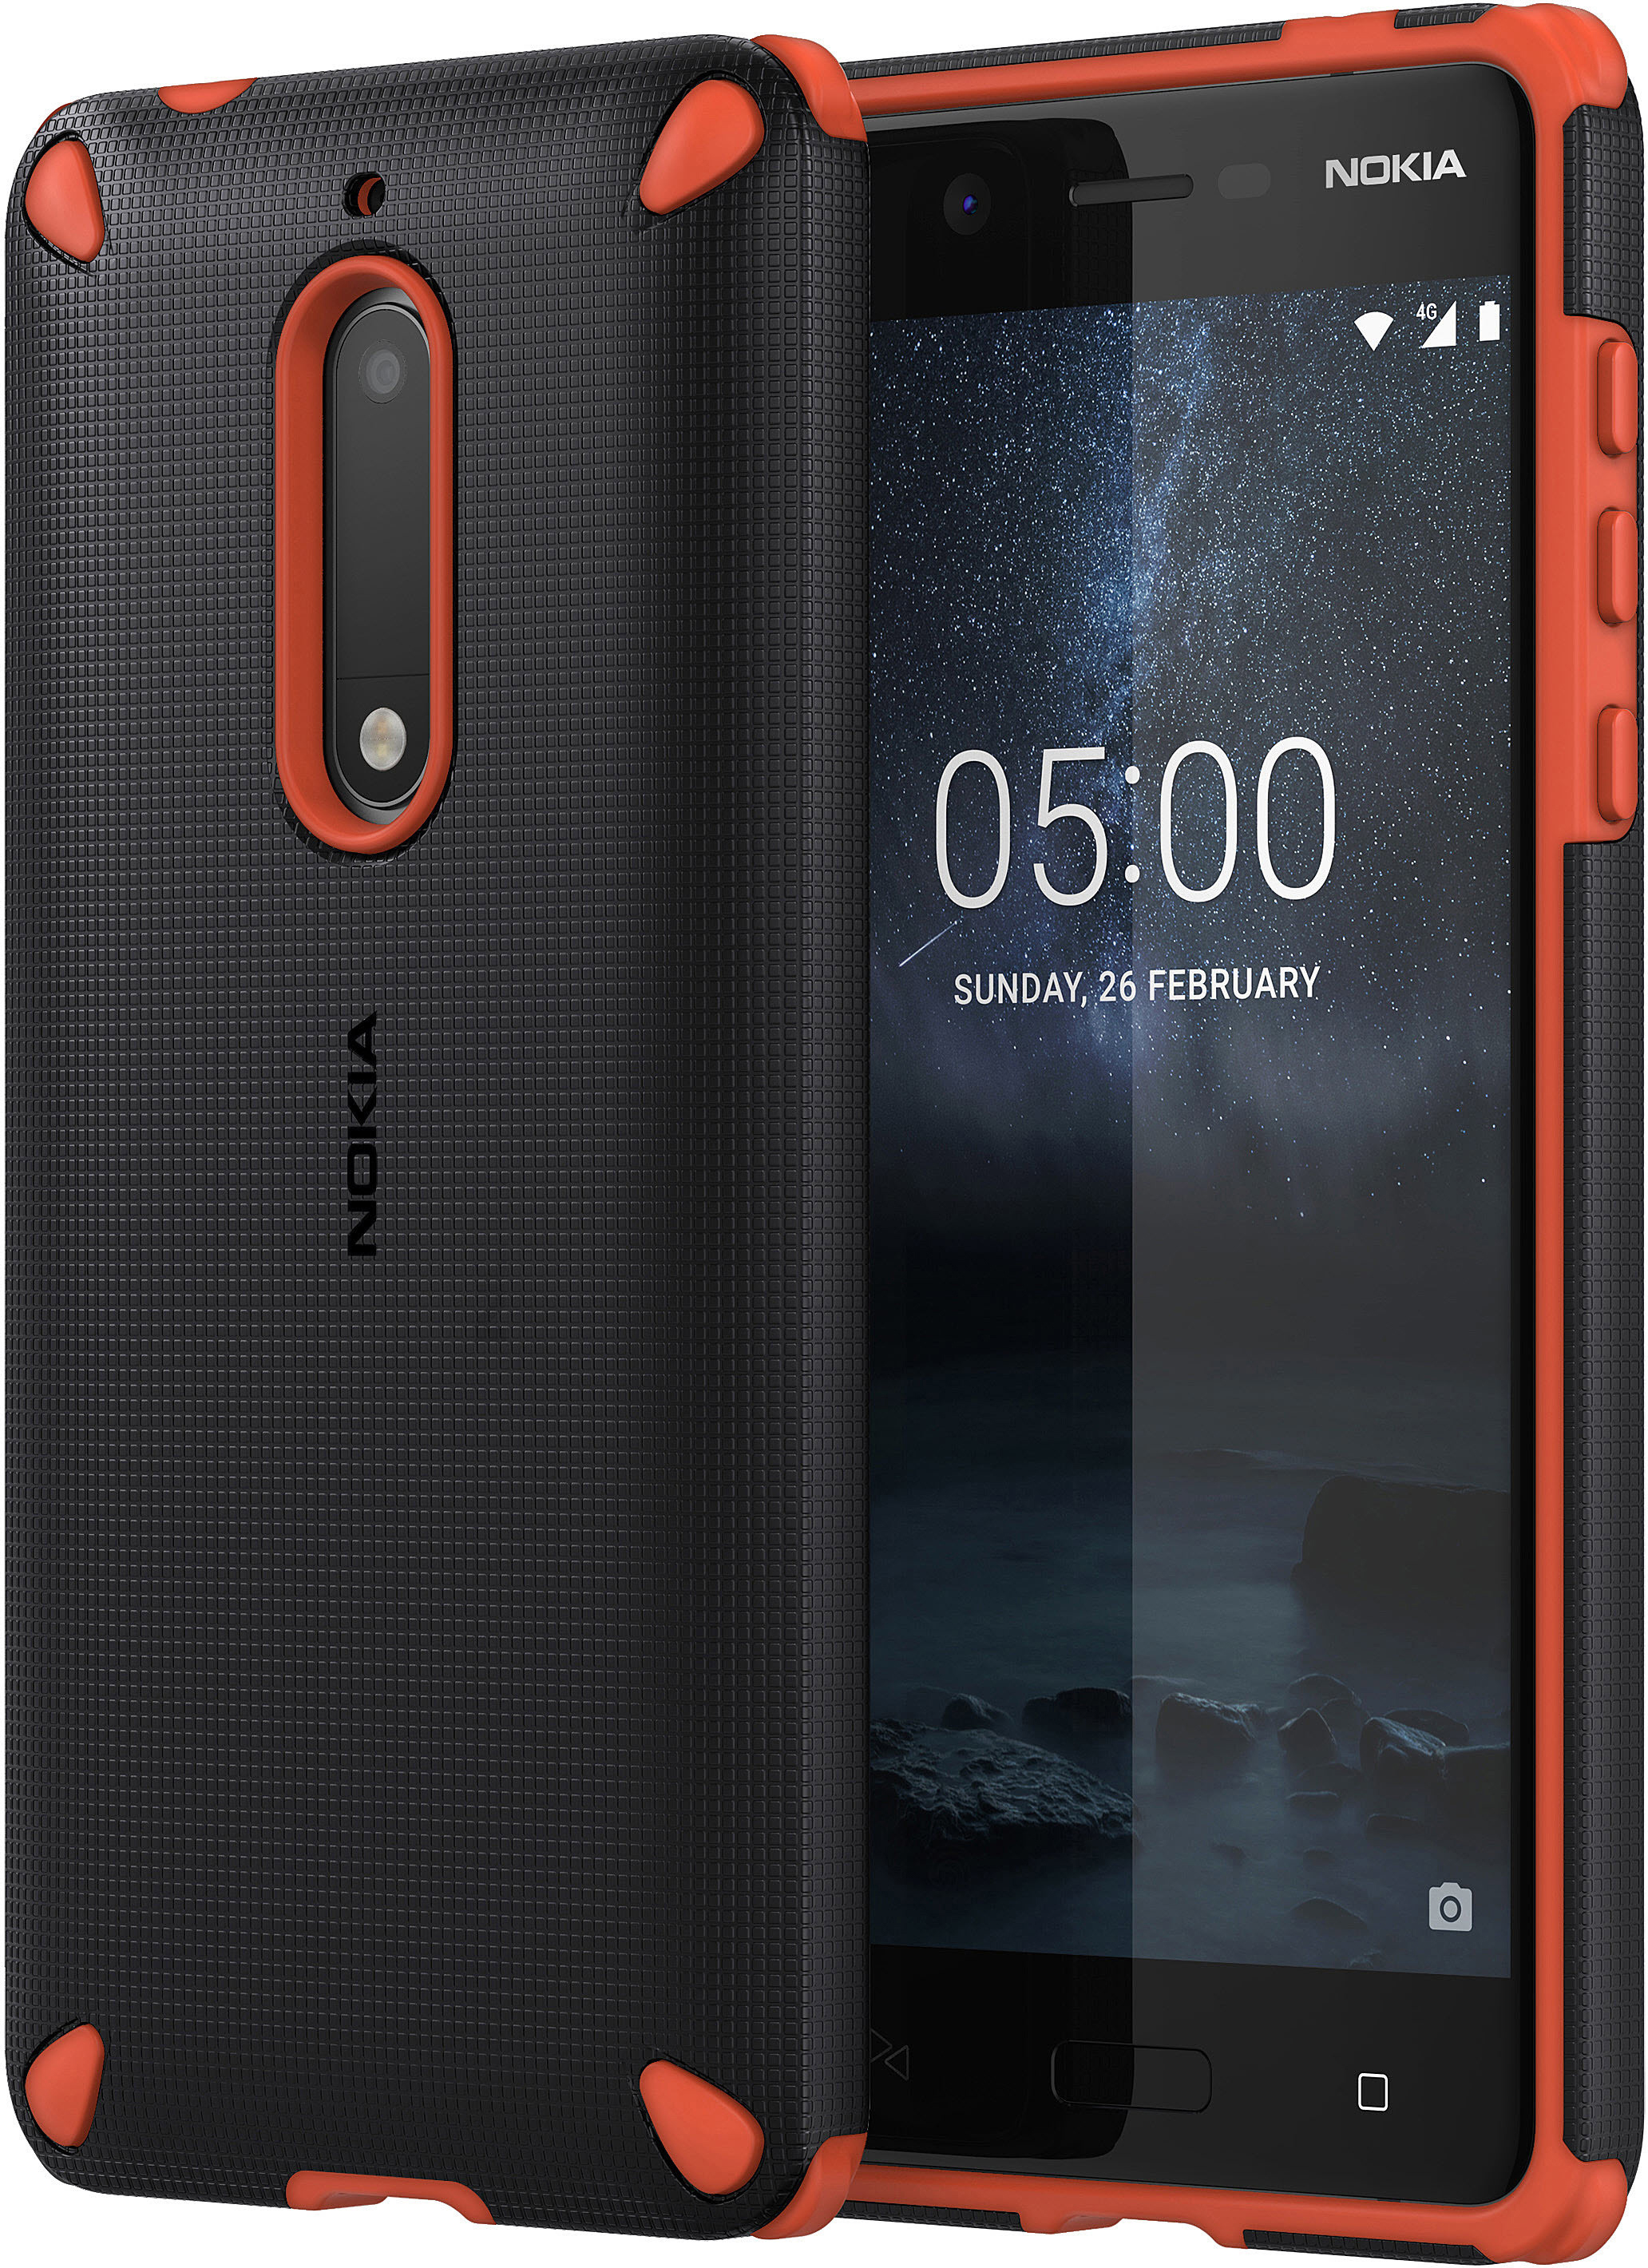 CC-502, 5, Rugged Orange Backcover, Nokia, NOKIA Impact Case